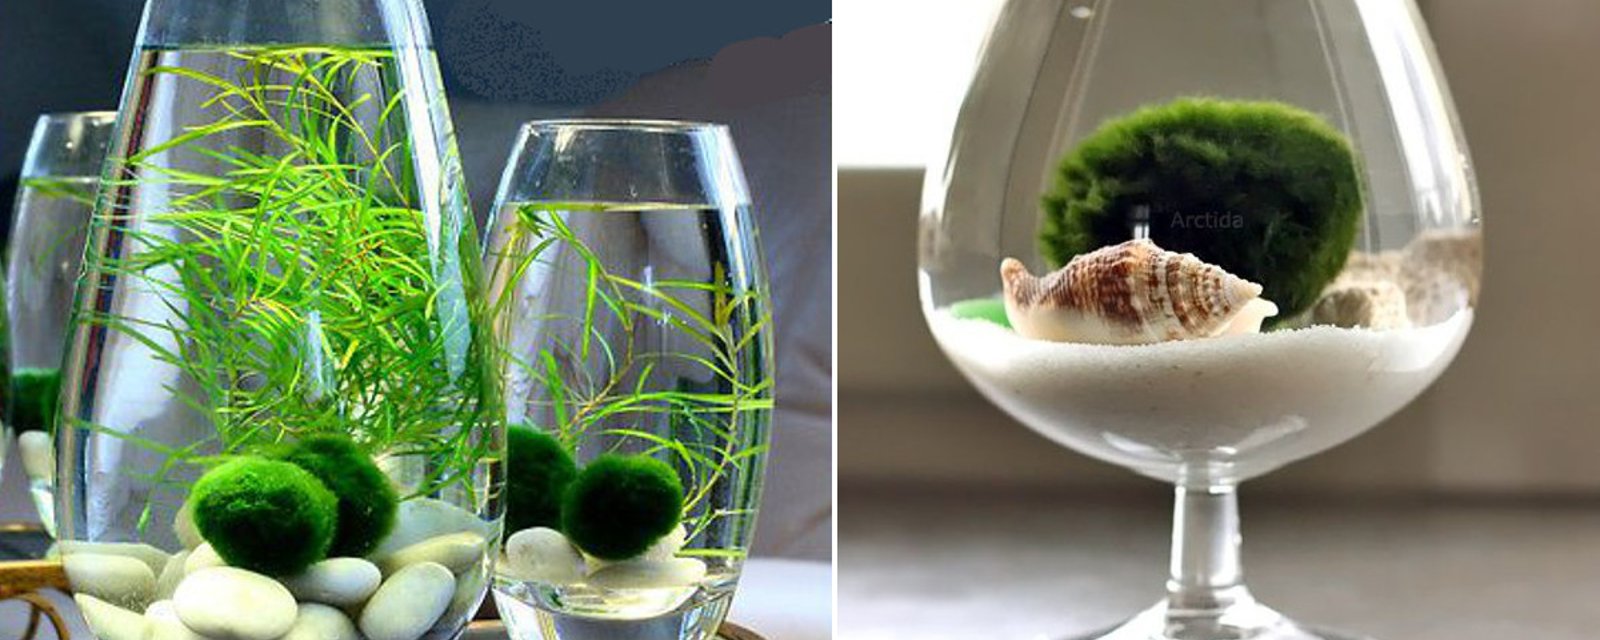 Décorez votre intérieur avec une plante aquatique grâce à ces idées qui sauront vous inspirer